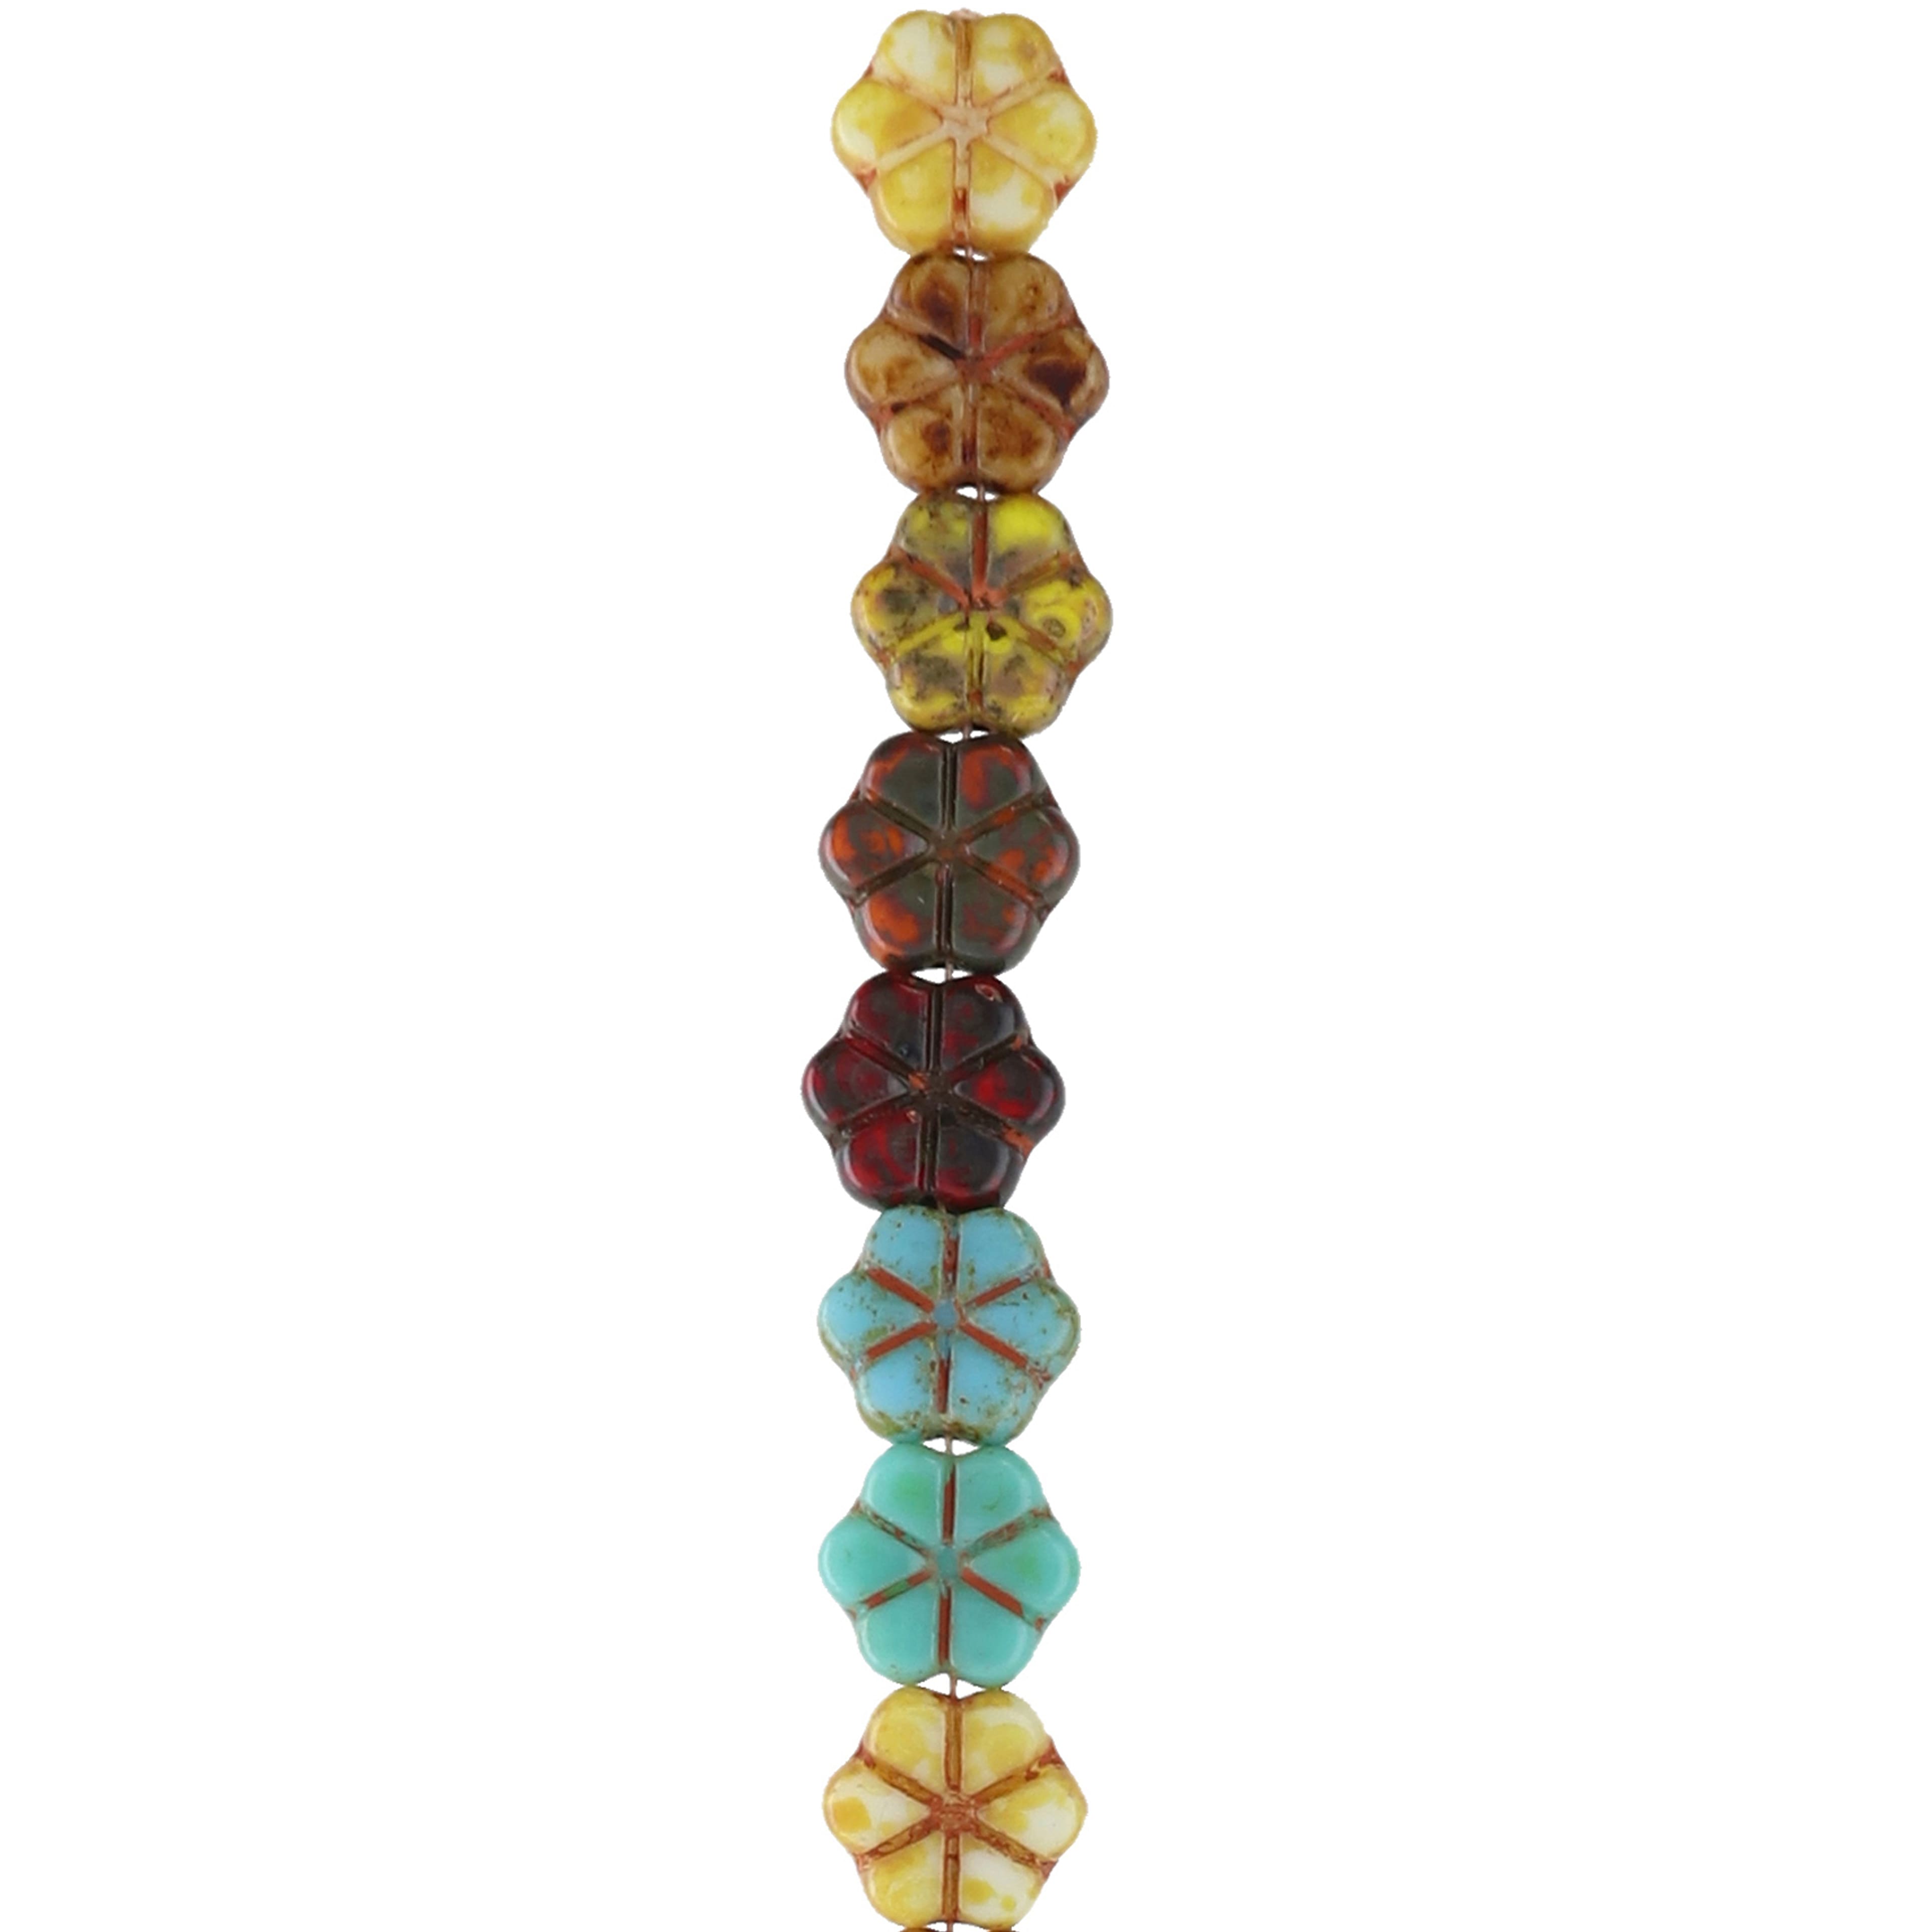 6 Packs: 18 ct. (108 total) Autumn Czech Glass Flower Beads, 10.6mm by Bead Landing&#x2122;